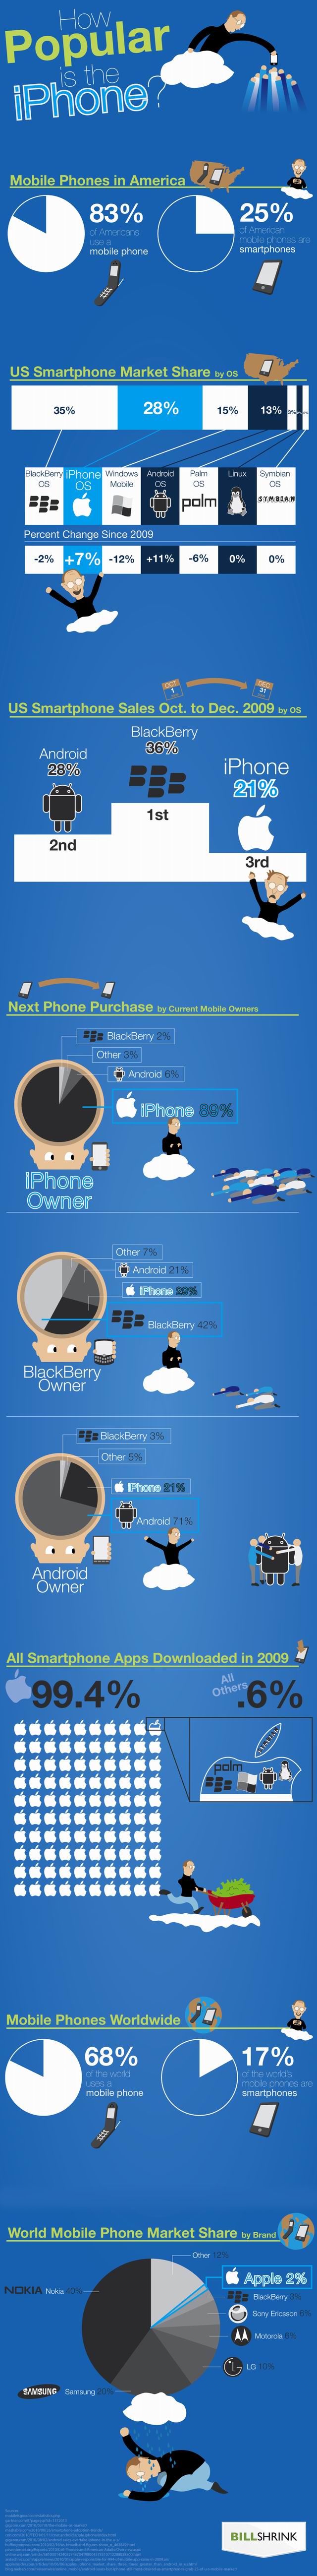 Quelle popularité pour l'iPhone?